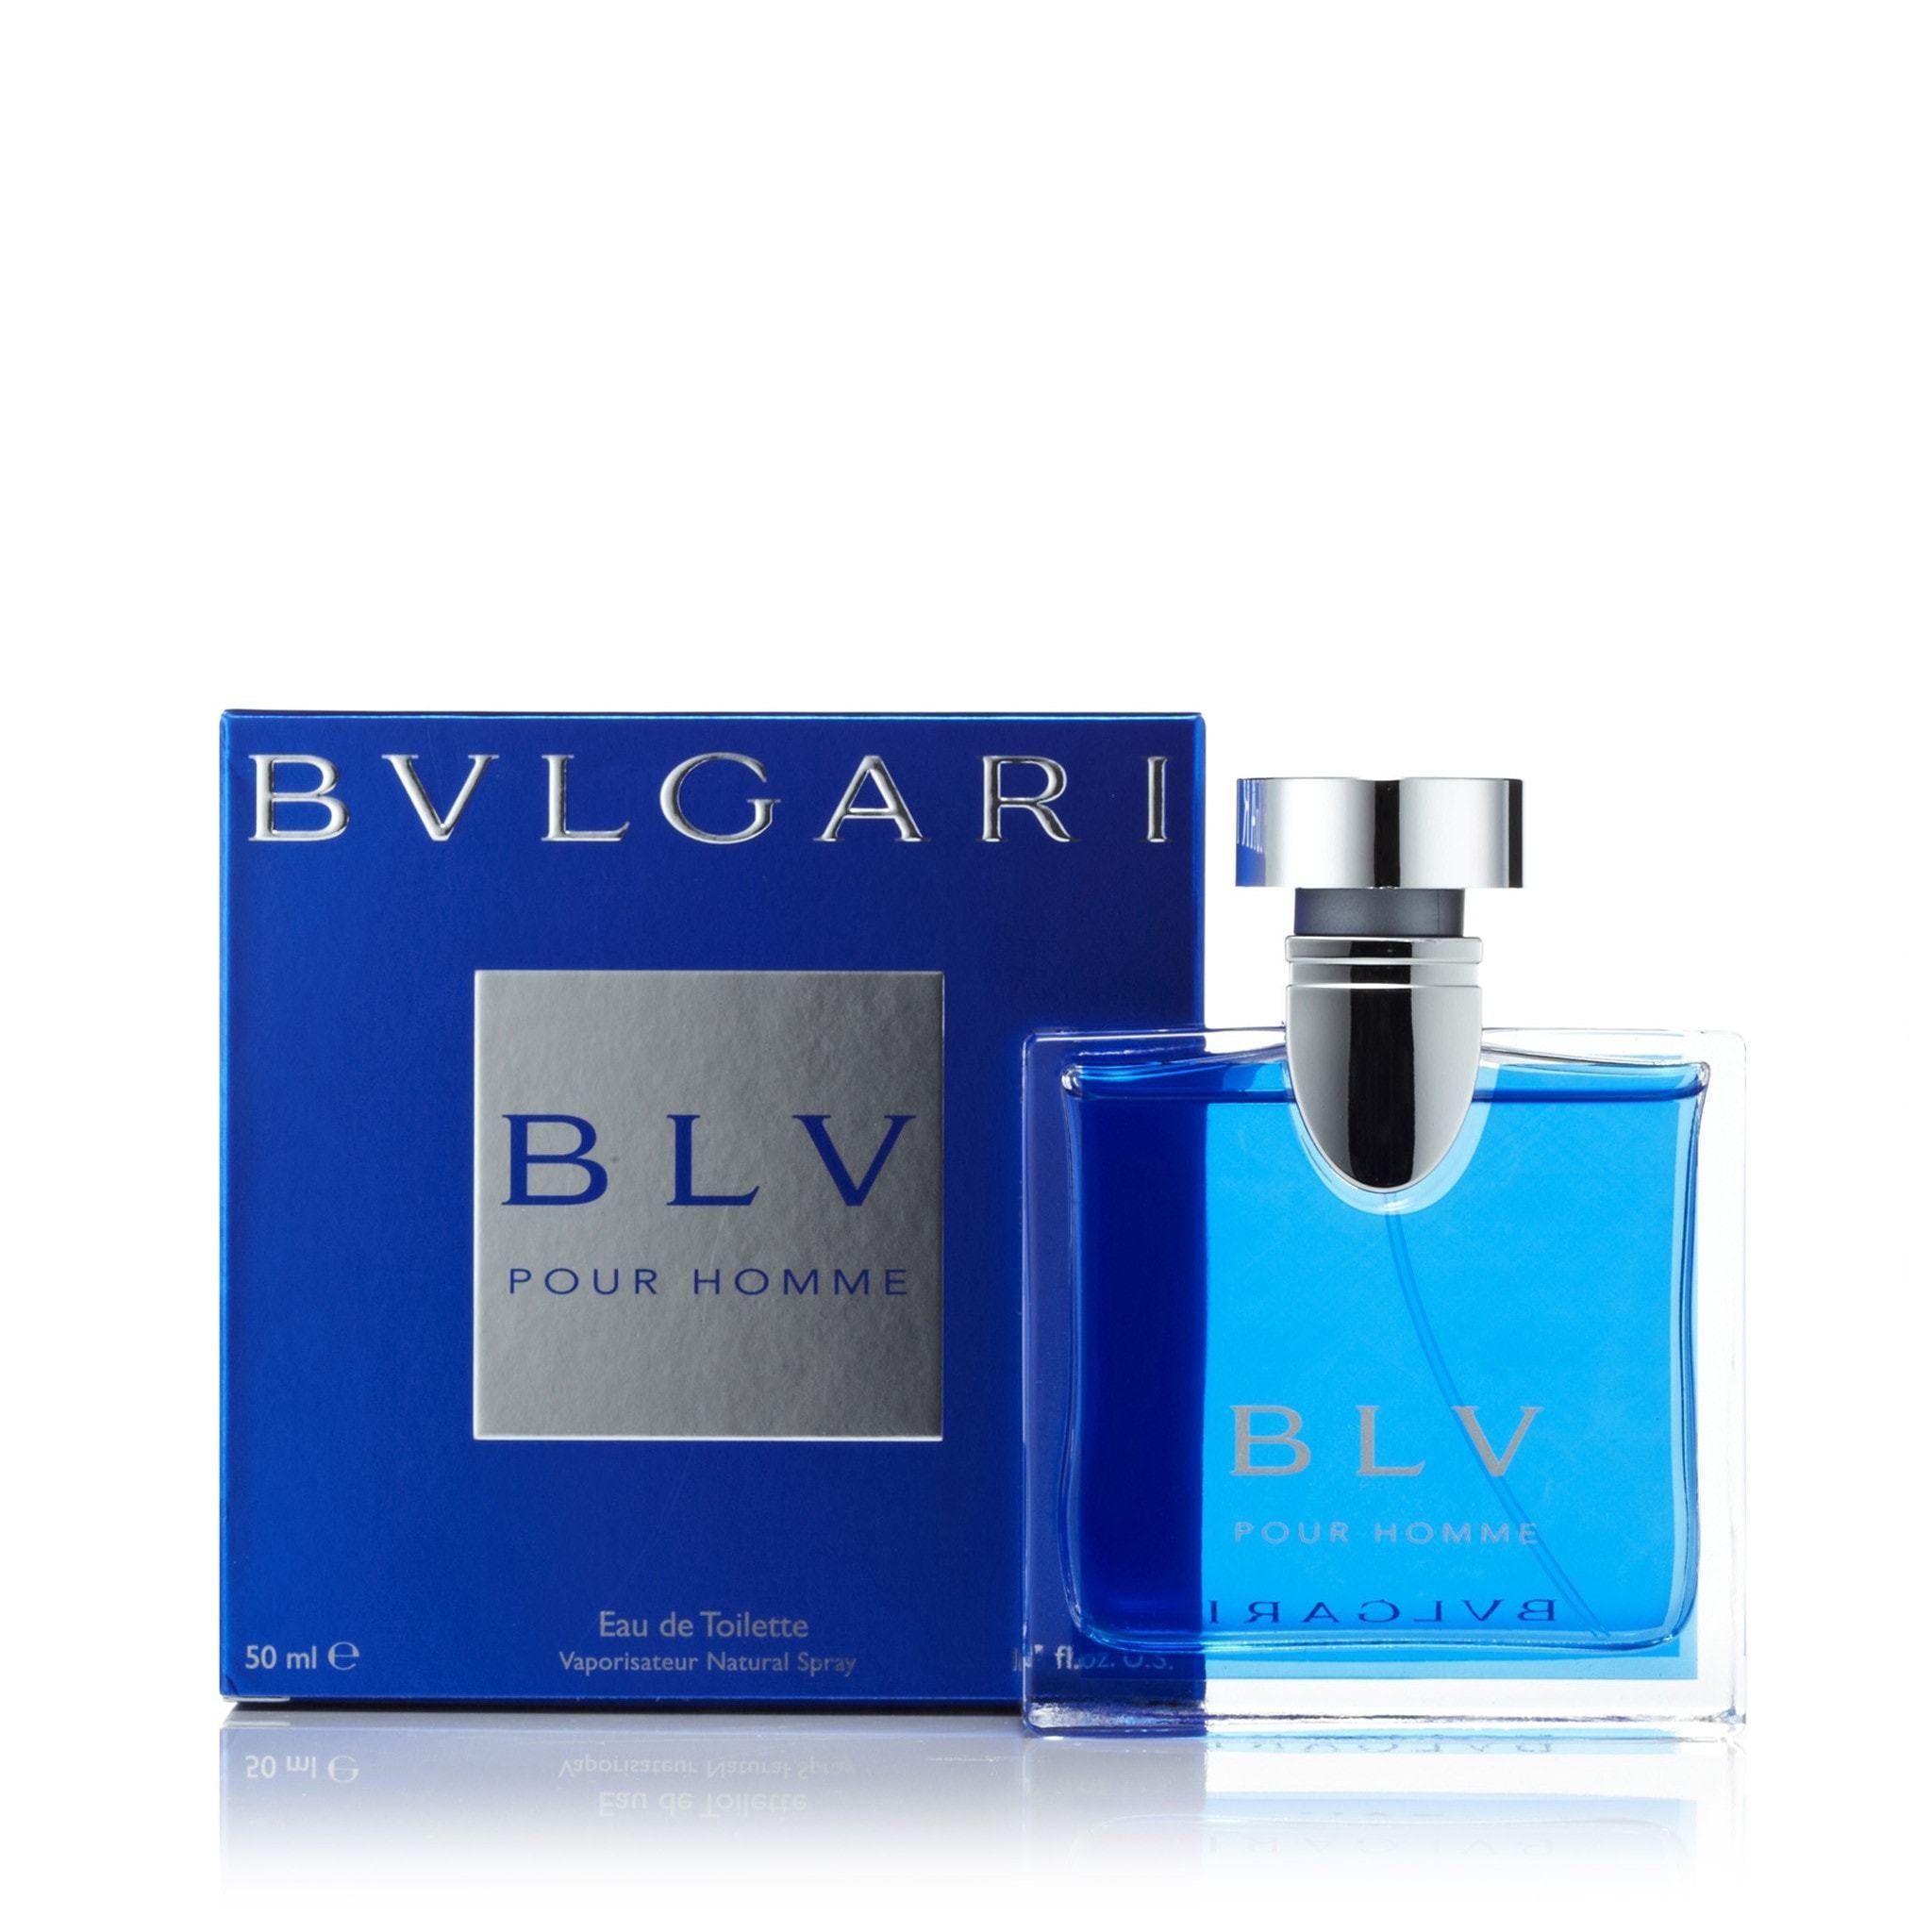 Bvlgari Eau Parfumée Au Thé Bleu Travel Spray 0.34